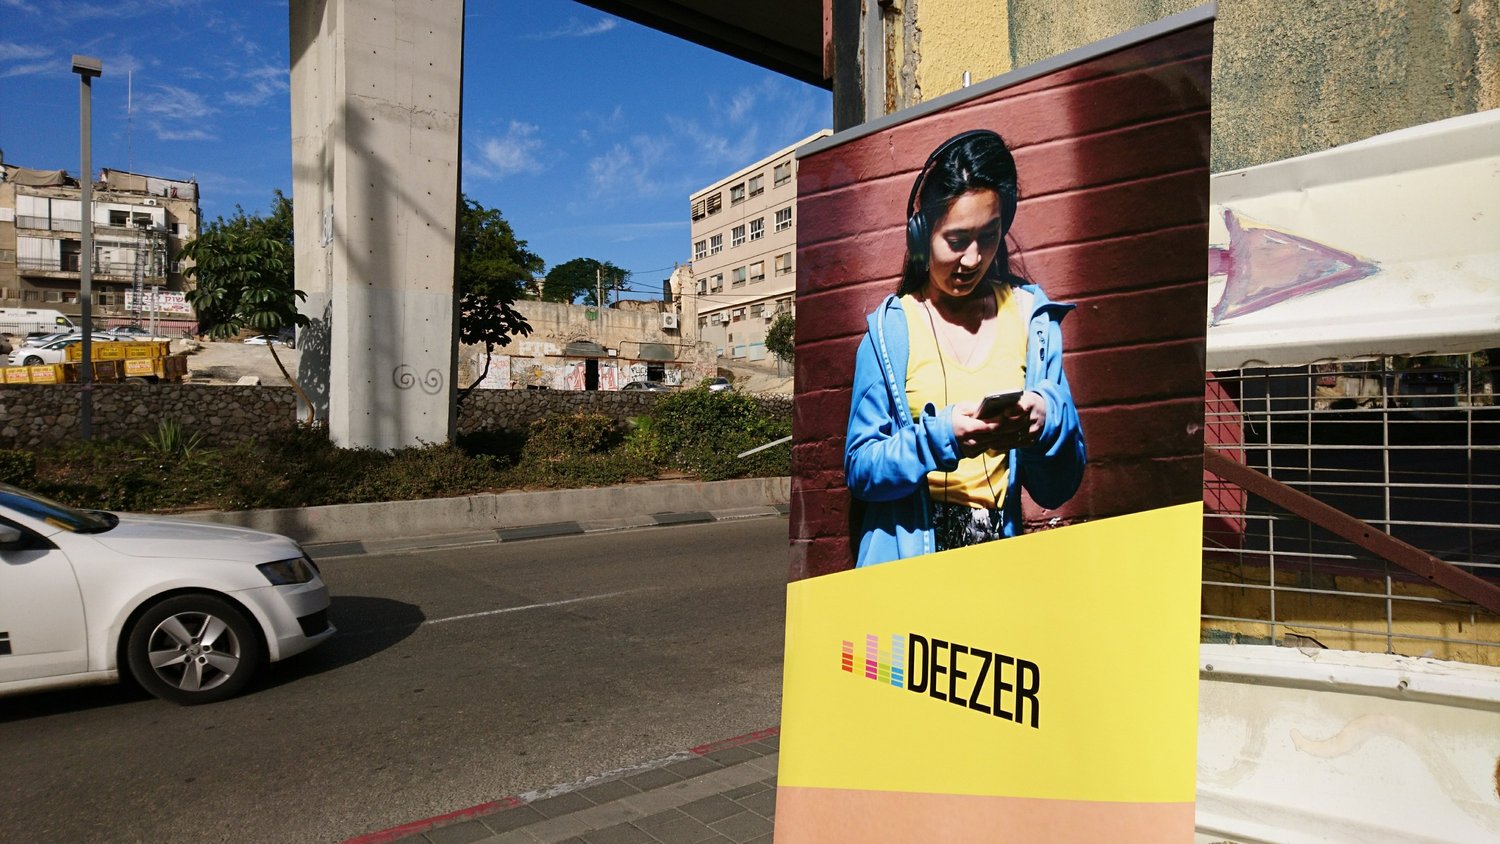 שירות המוזיקה דיזר (Deezer) הושק בישראל